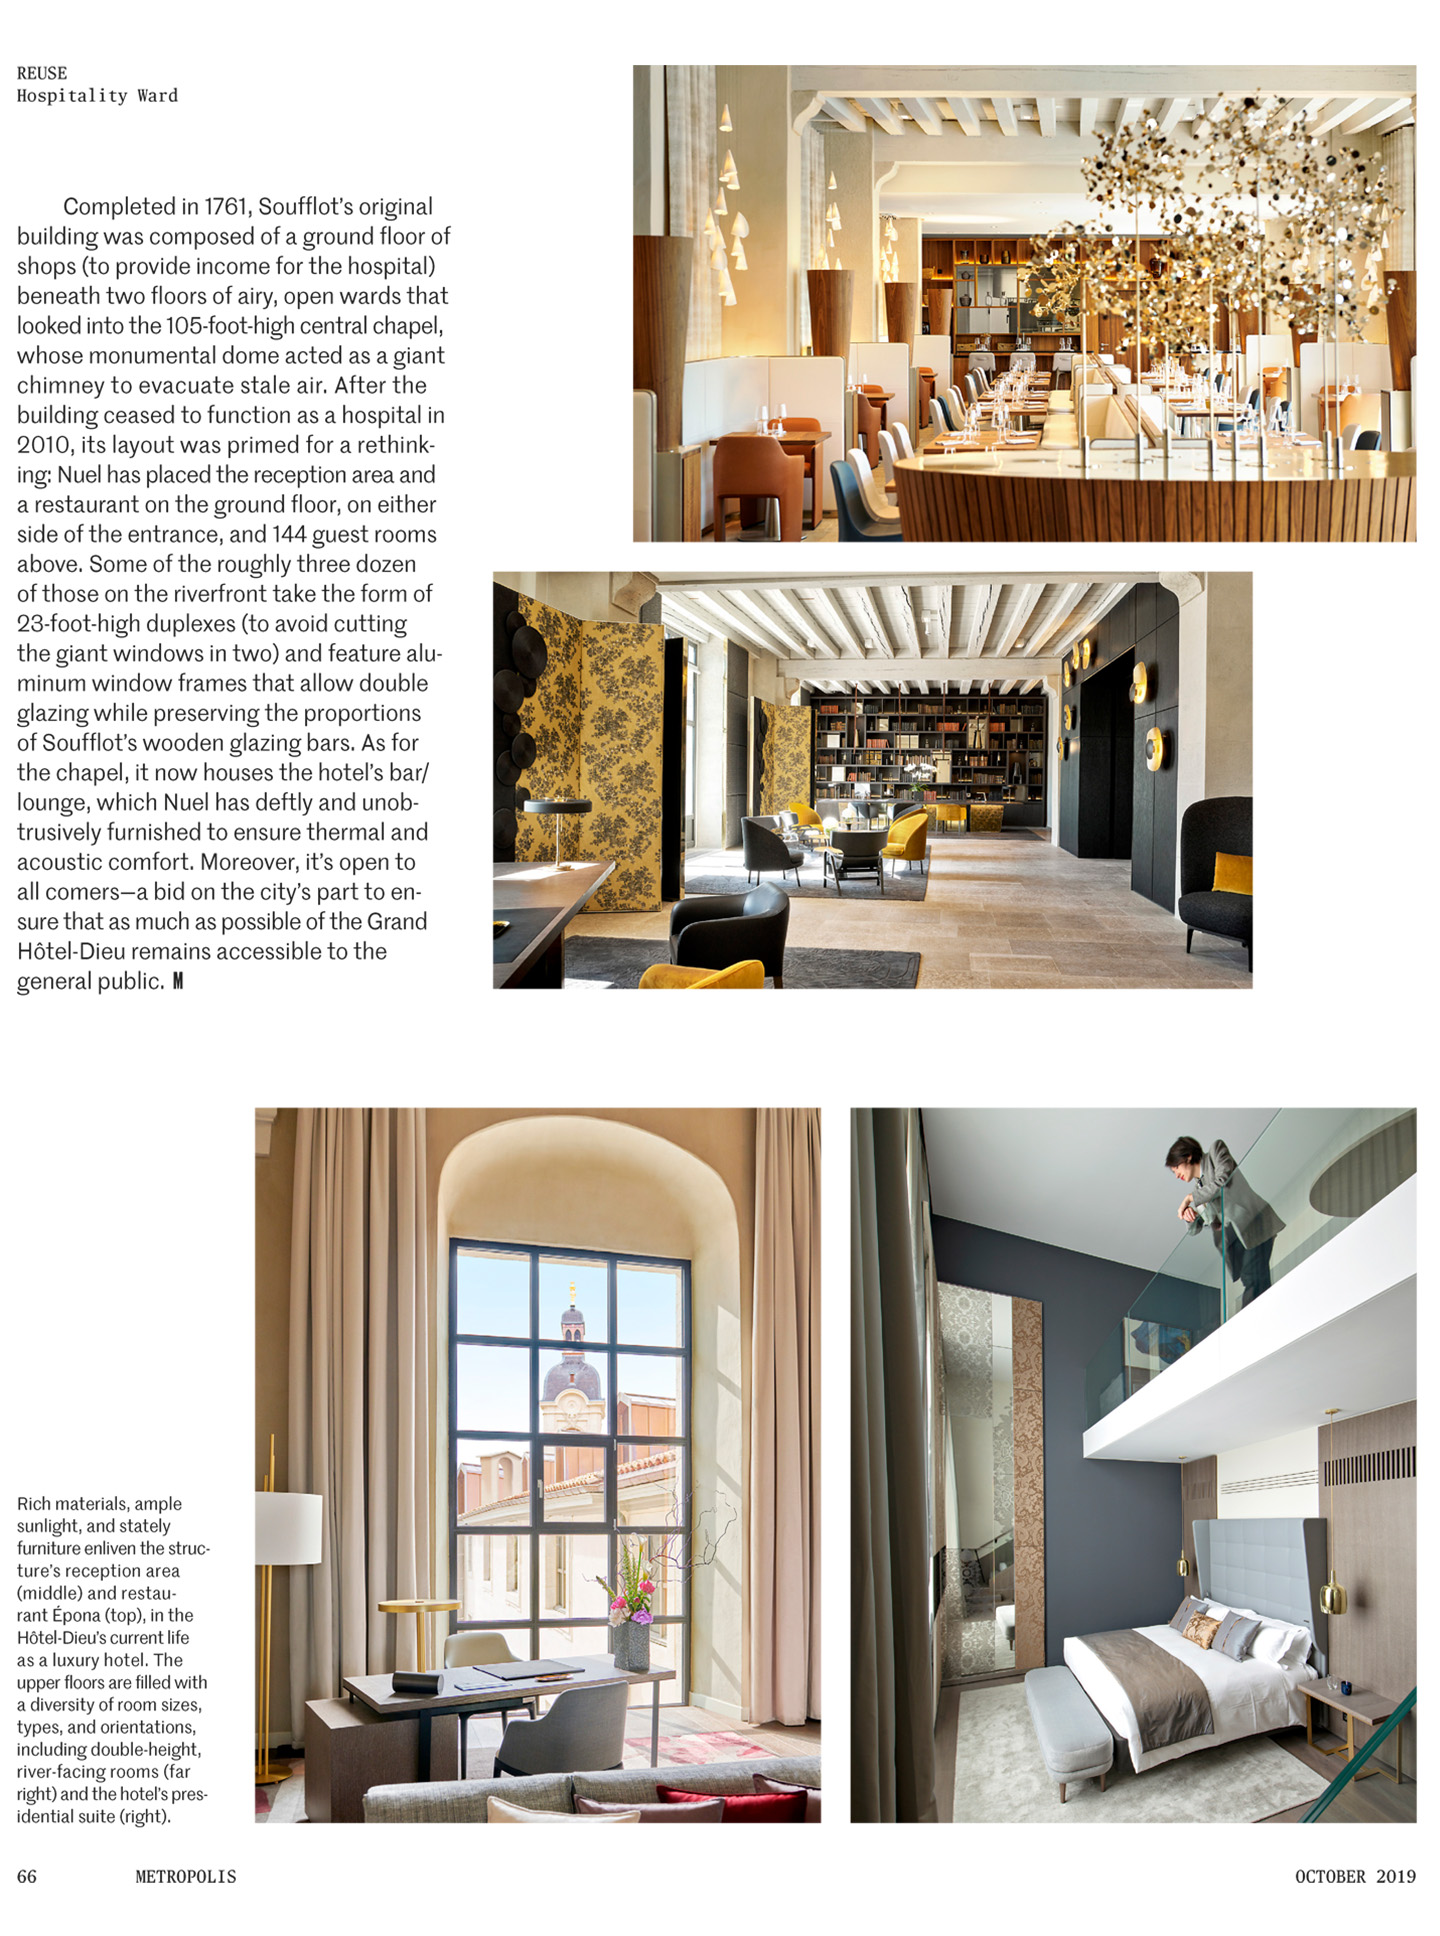 Article sur l'InterContinental Lyon Hotel Dieu réalisé par le studio jean-Philippe Nuel dans le magazine Metropolis, nouvel hotel de luxe, architecture d'intérieur de luxe, patrimoine historique